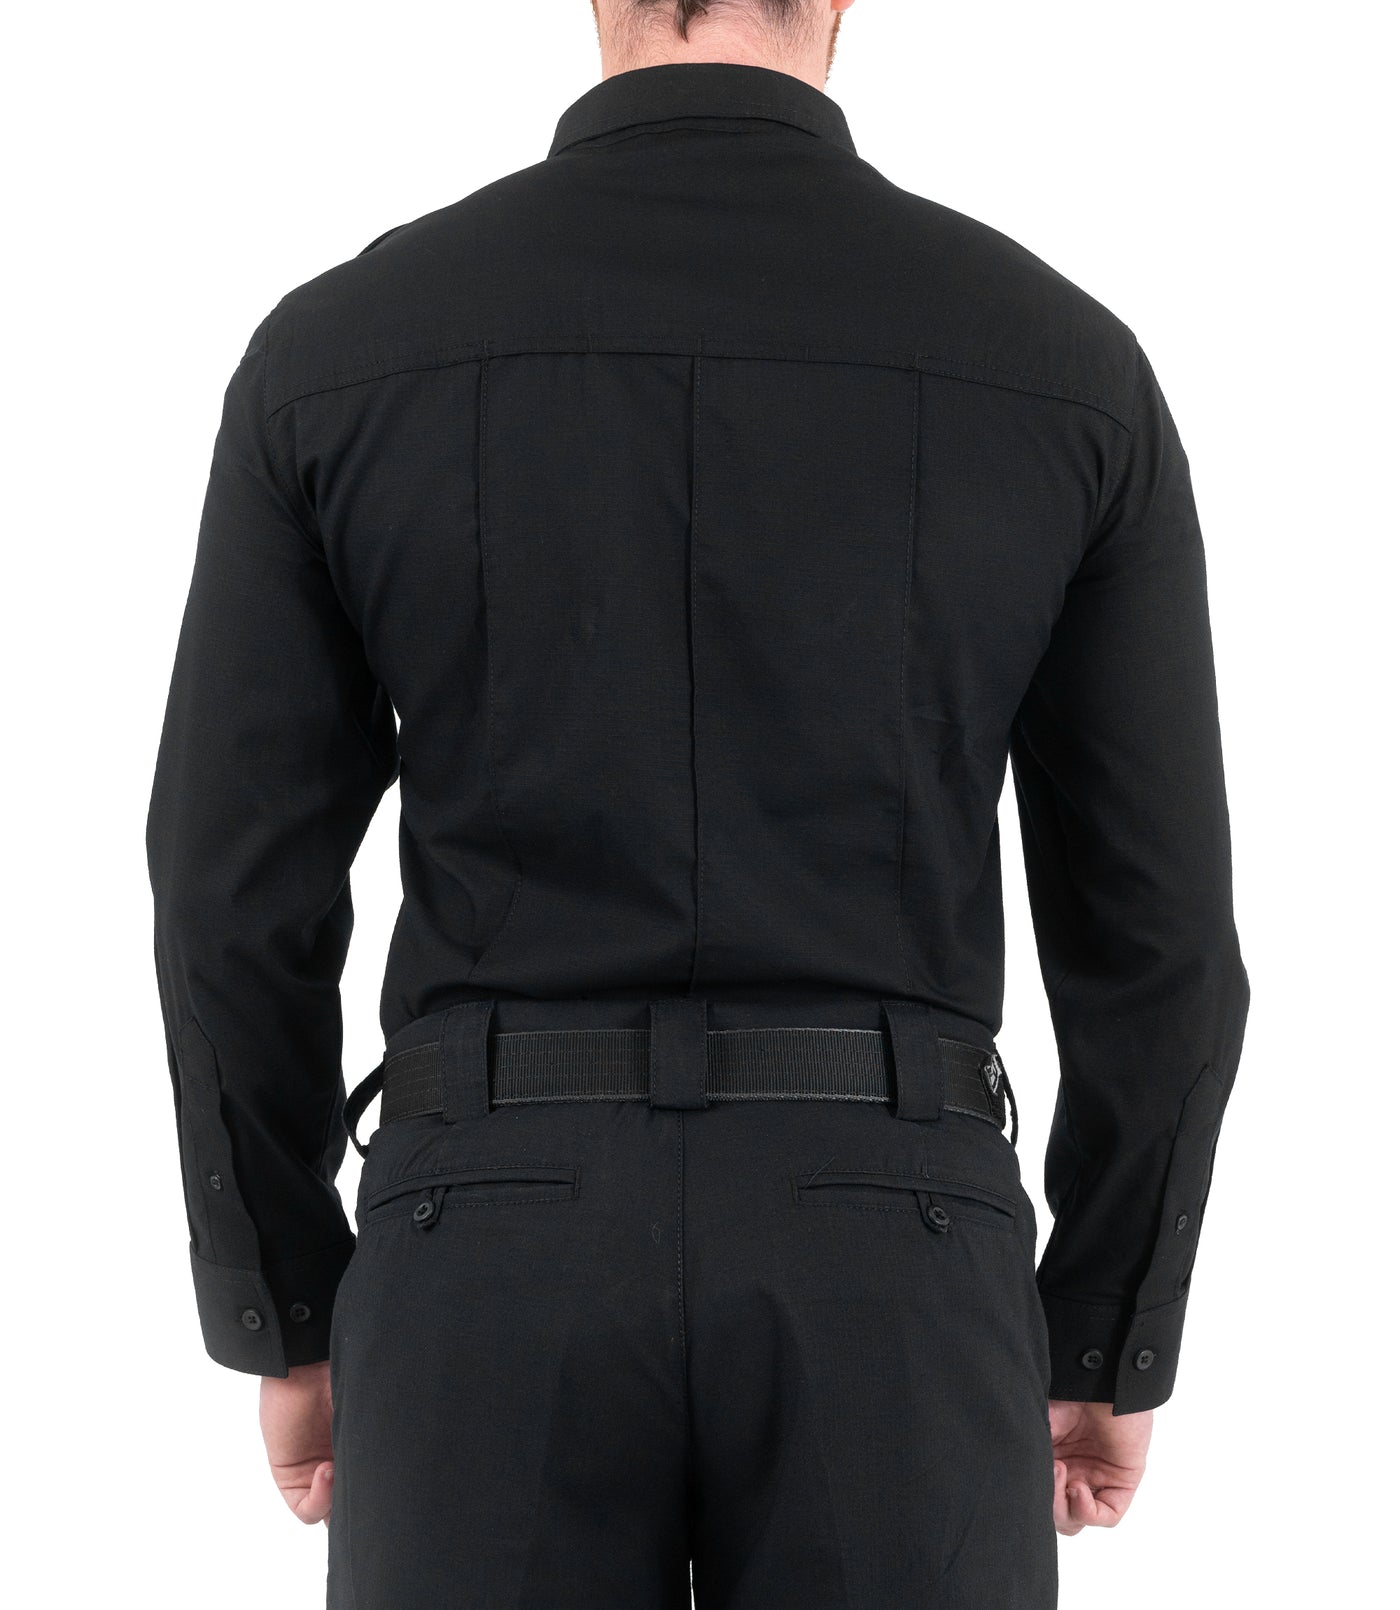 Back of Men's Pro Duty Uniform Shirt in Black